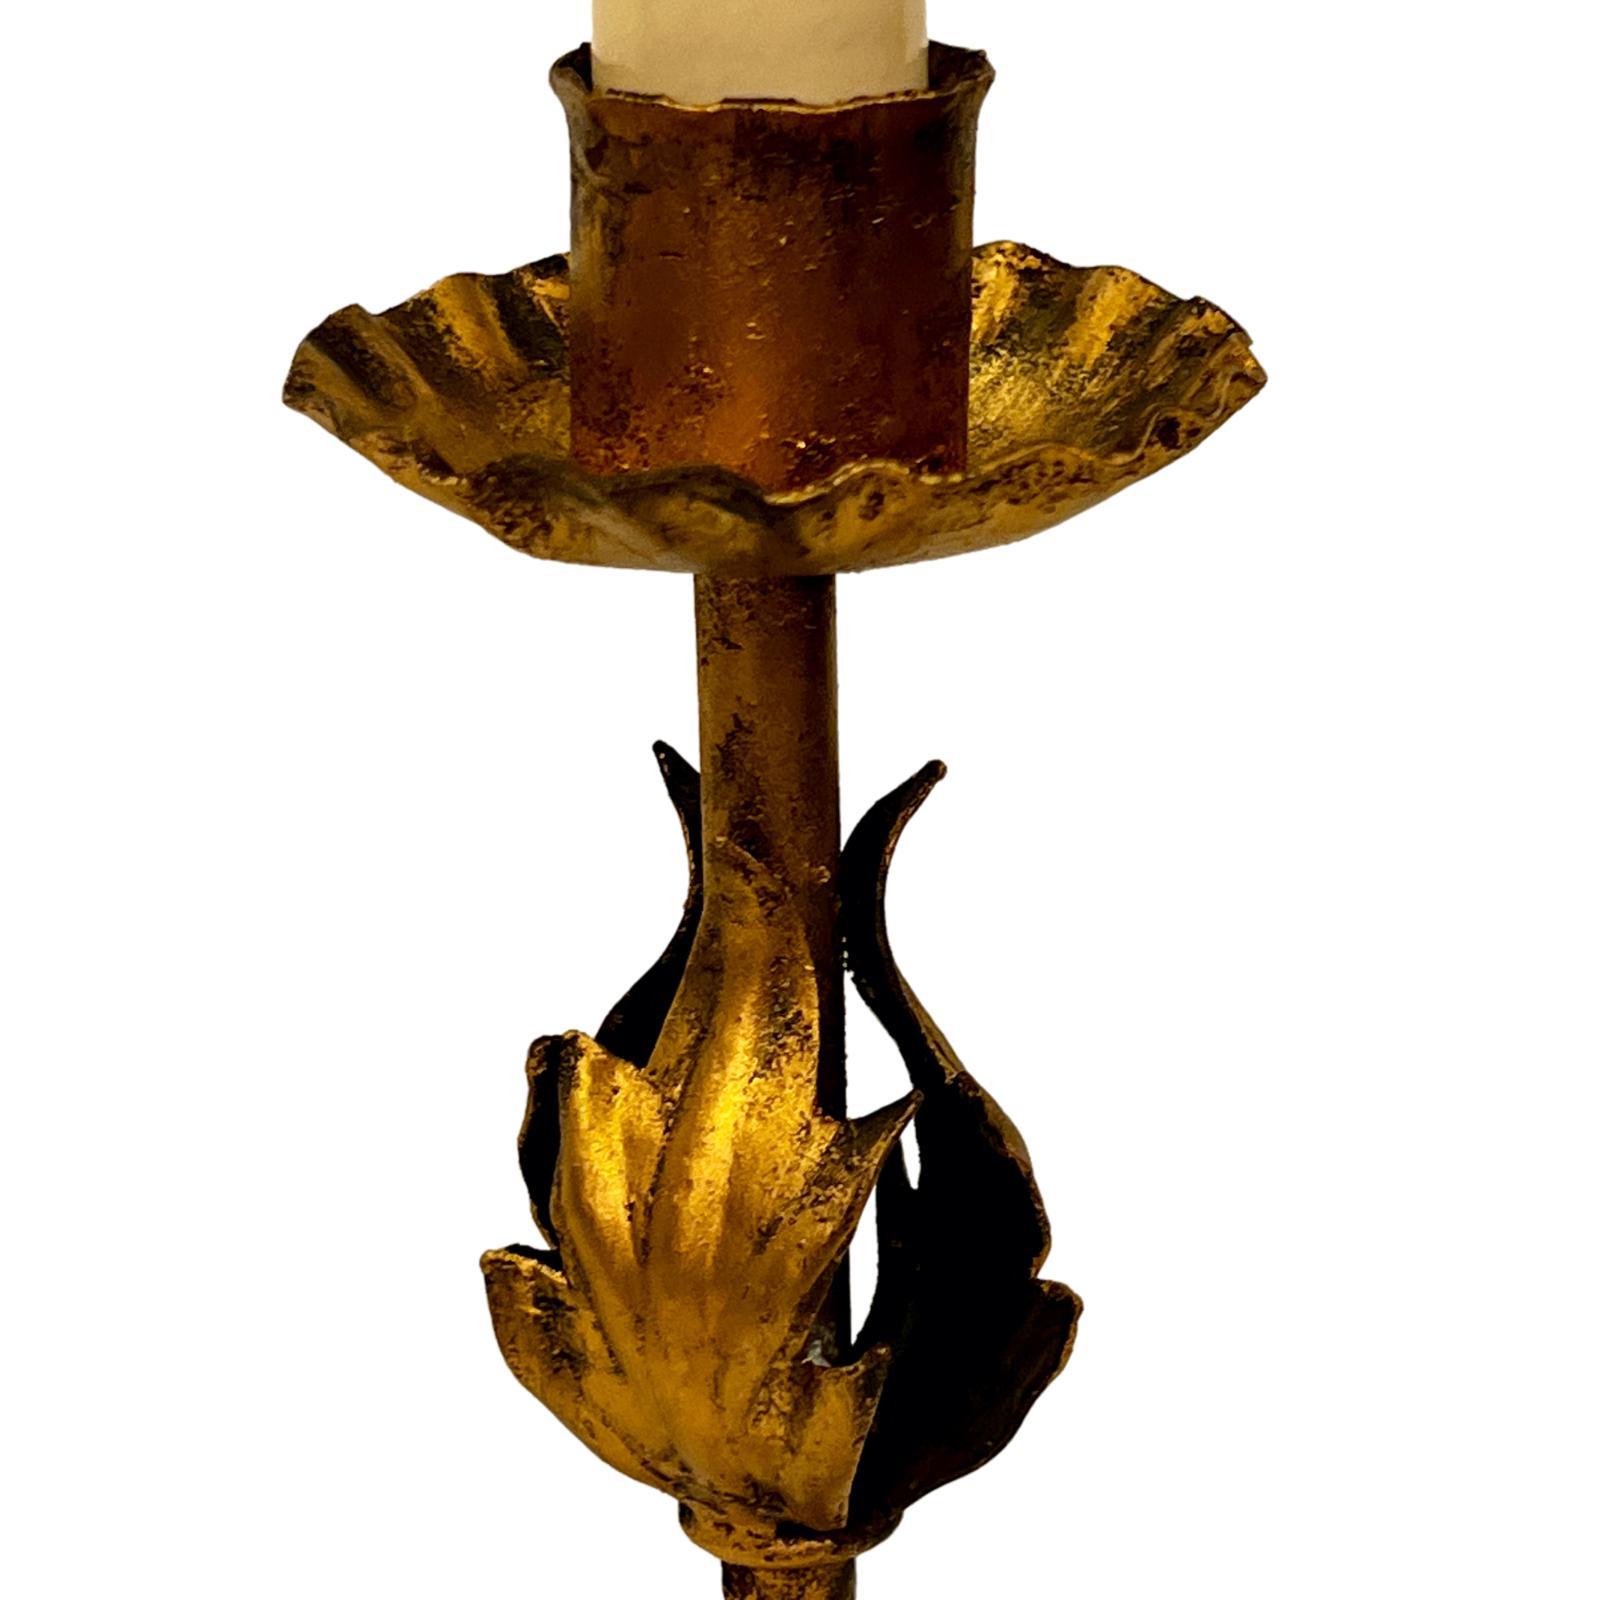 Chandelier italien en métal doré datant de 1900, électrifié en tant que lampe.

Mesures :
Hauteur du corps : 10.5
Hauteur totale : 14.5